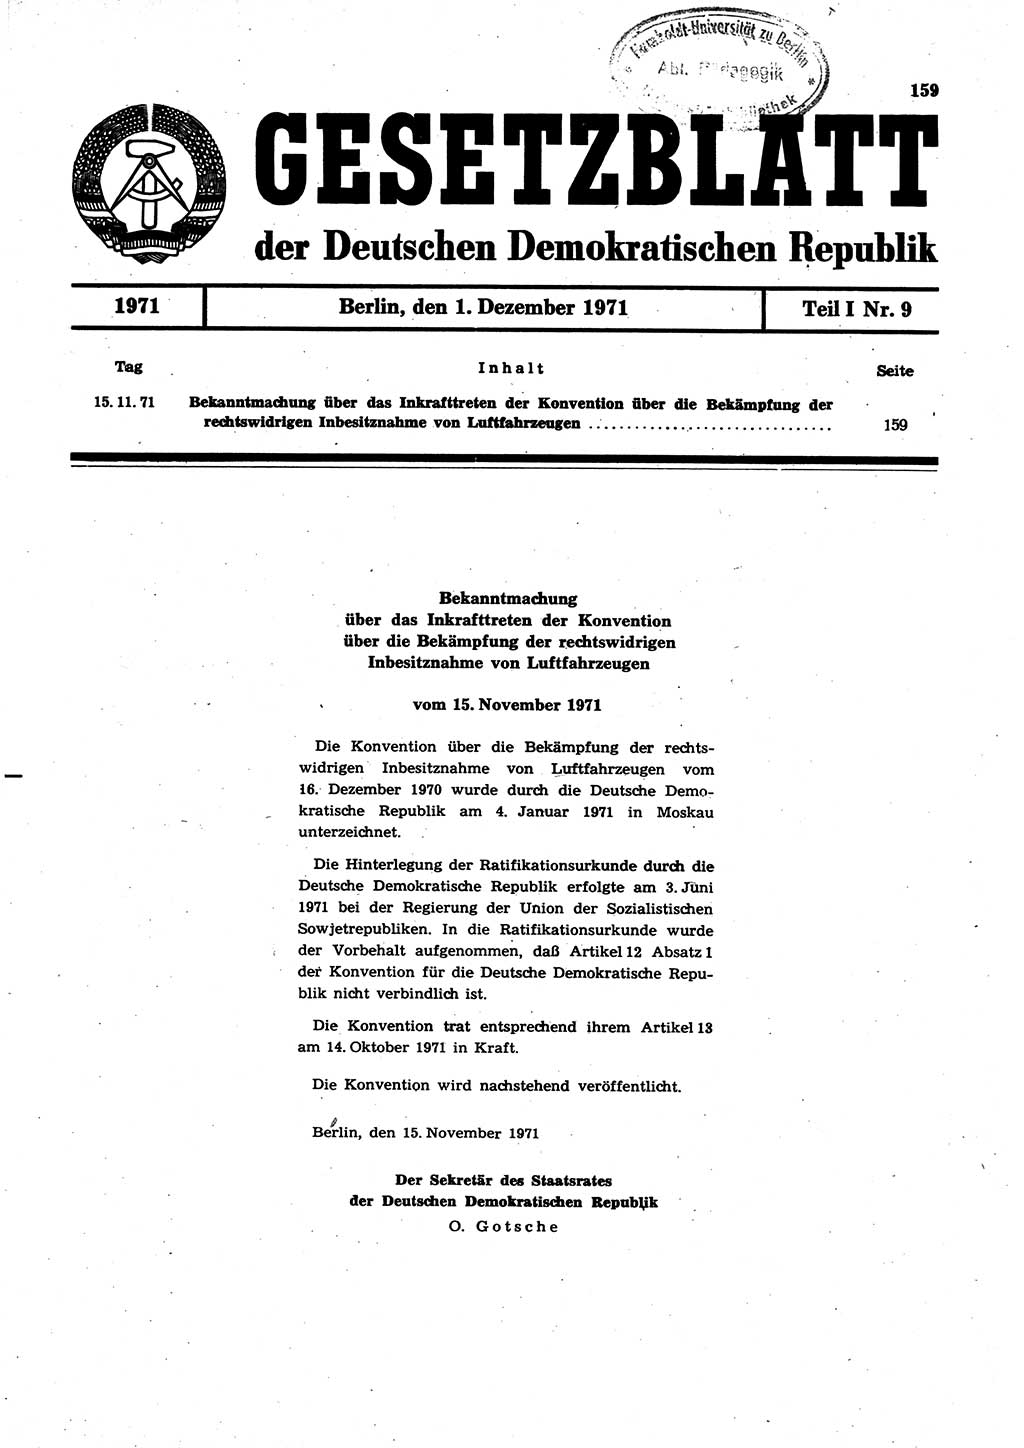 Gesetzblatt (GBl.) der Deutschen Demokratischen Republik (DDR) Teil Ⅰ 1971, Seite 159 (GBl. DDR Ⅰ 1971, S. 159)